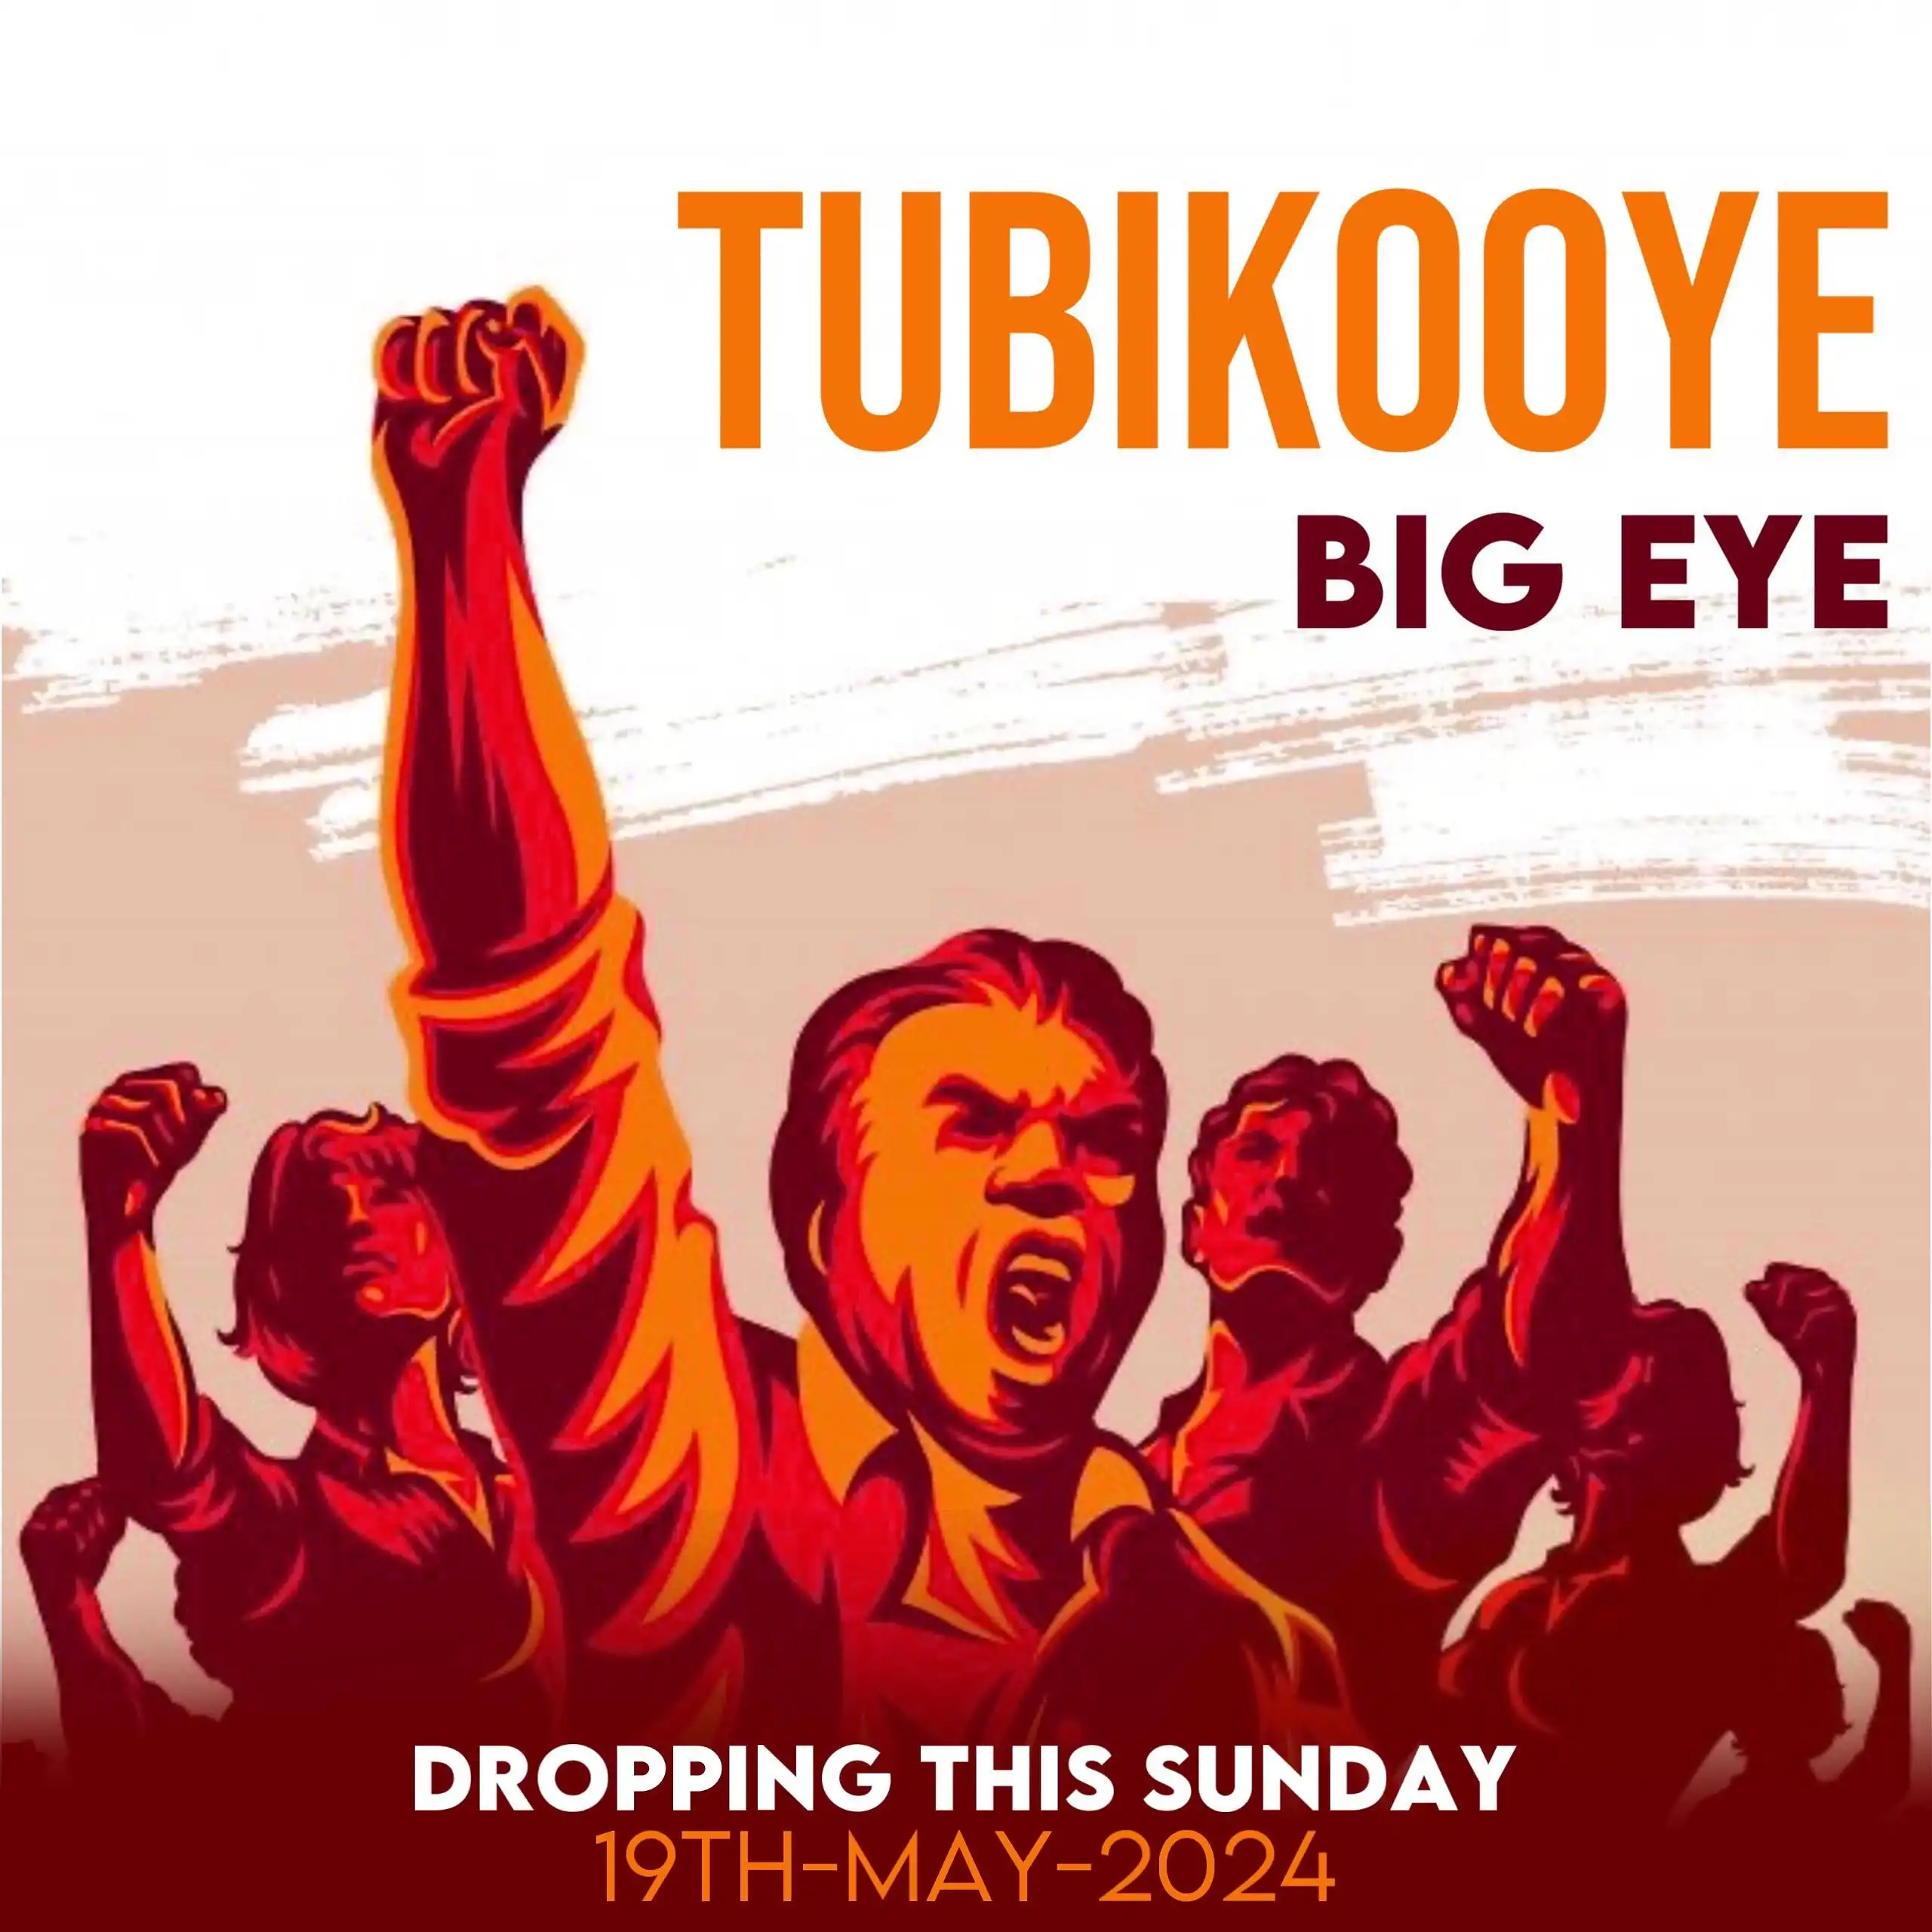 big-eye-tubikooye-album-cover